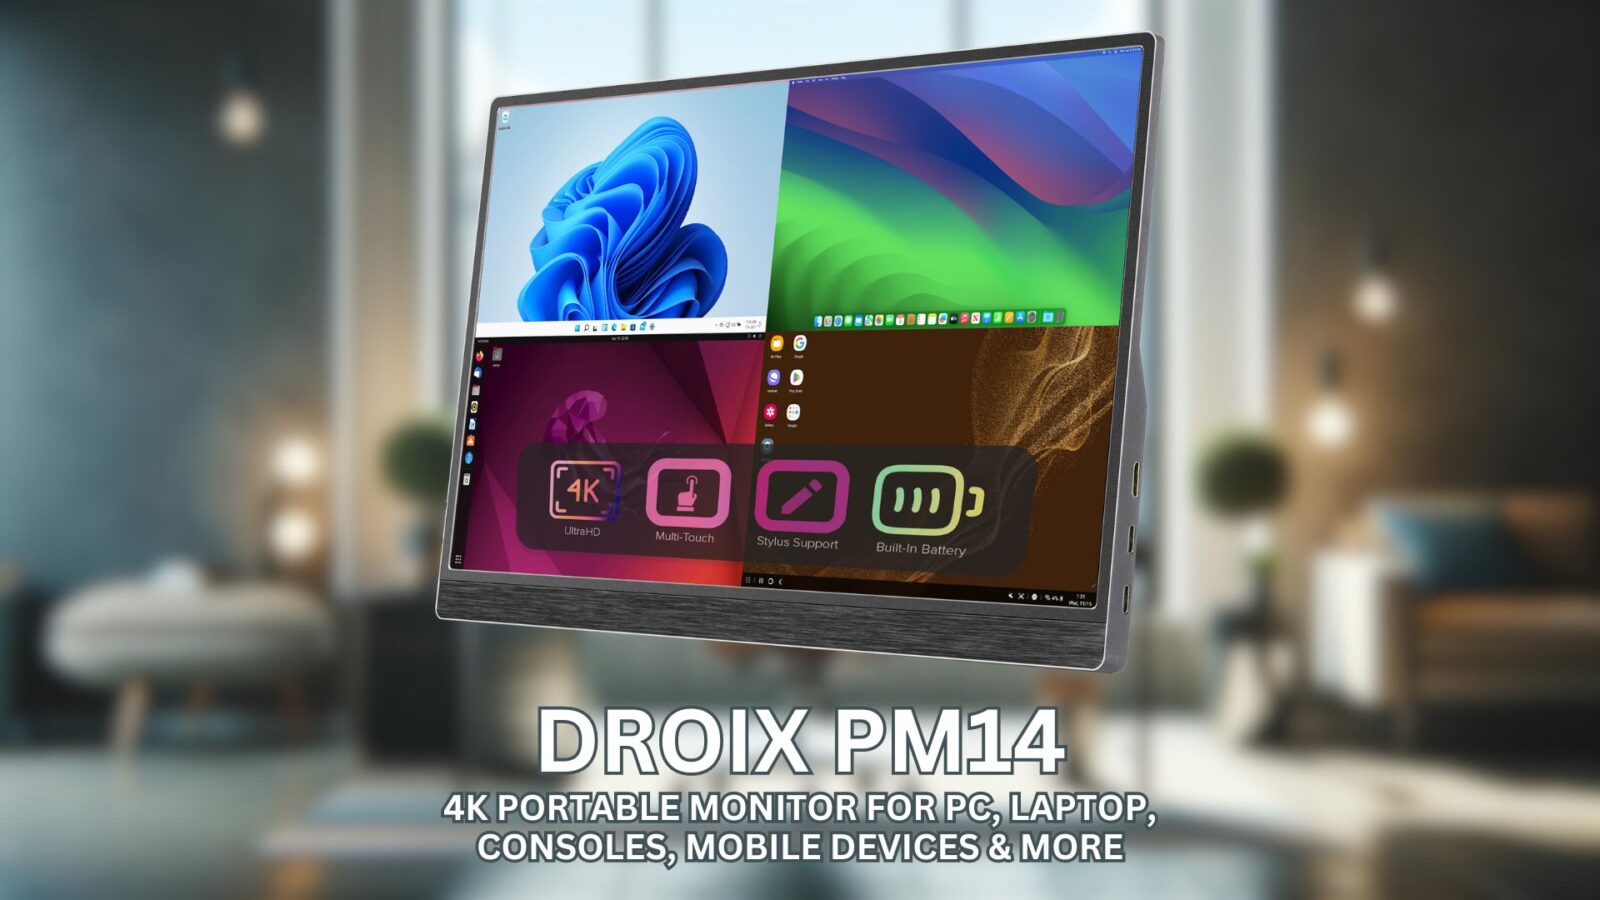 DroiX PM13 portable monitor